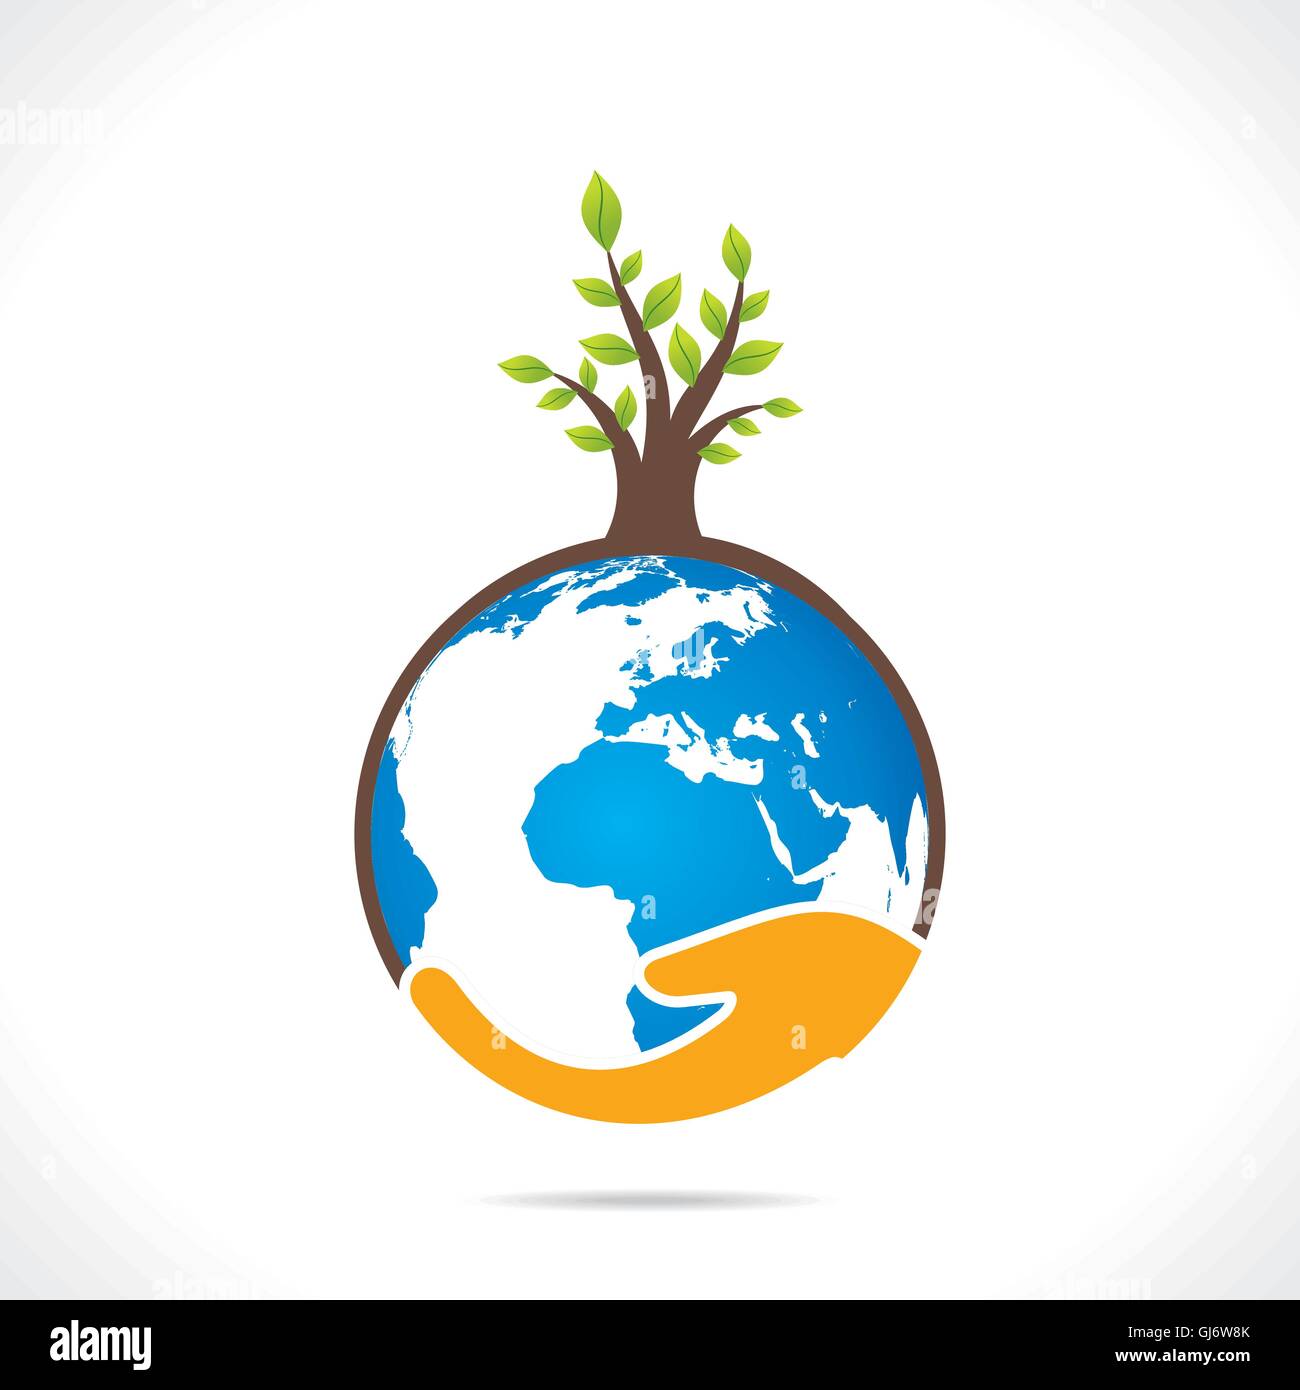 save earth or go green concept vector Stock Vector